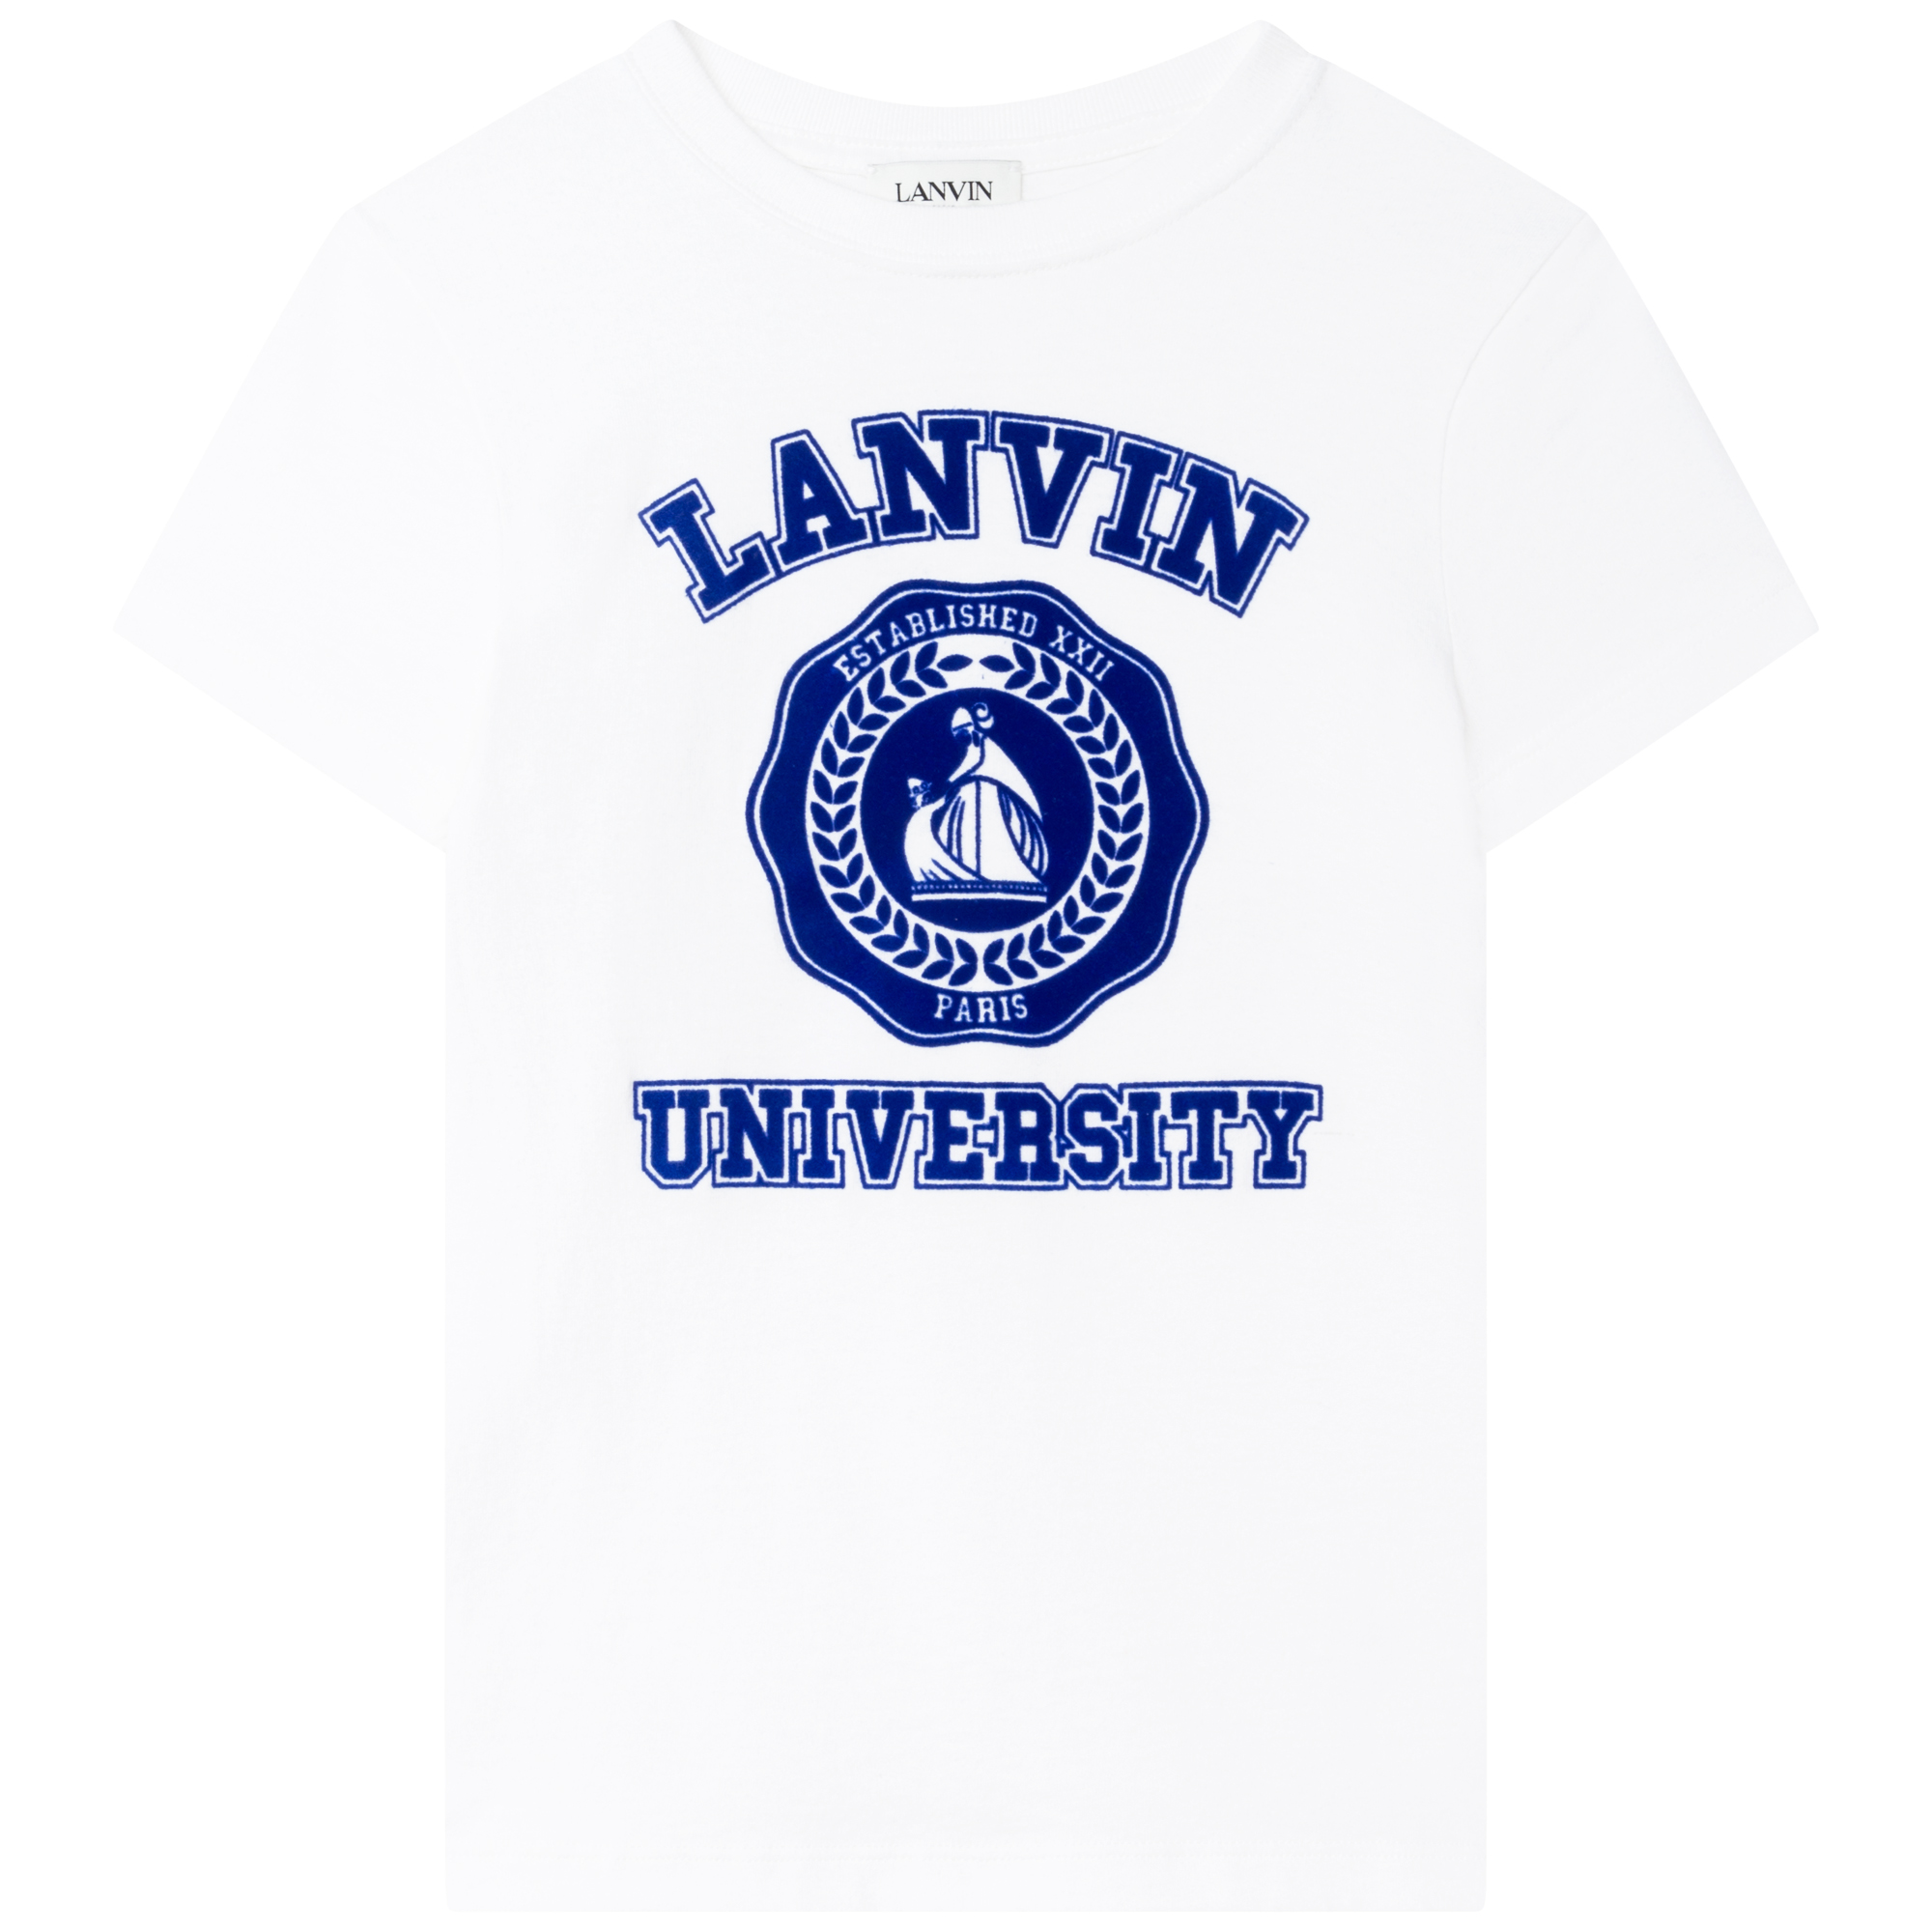 T-shirt manches courtes LANVIN pour GARCON